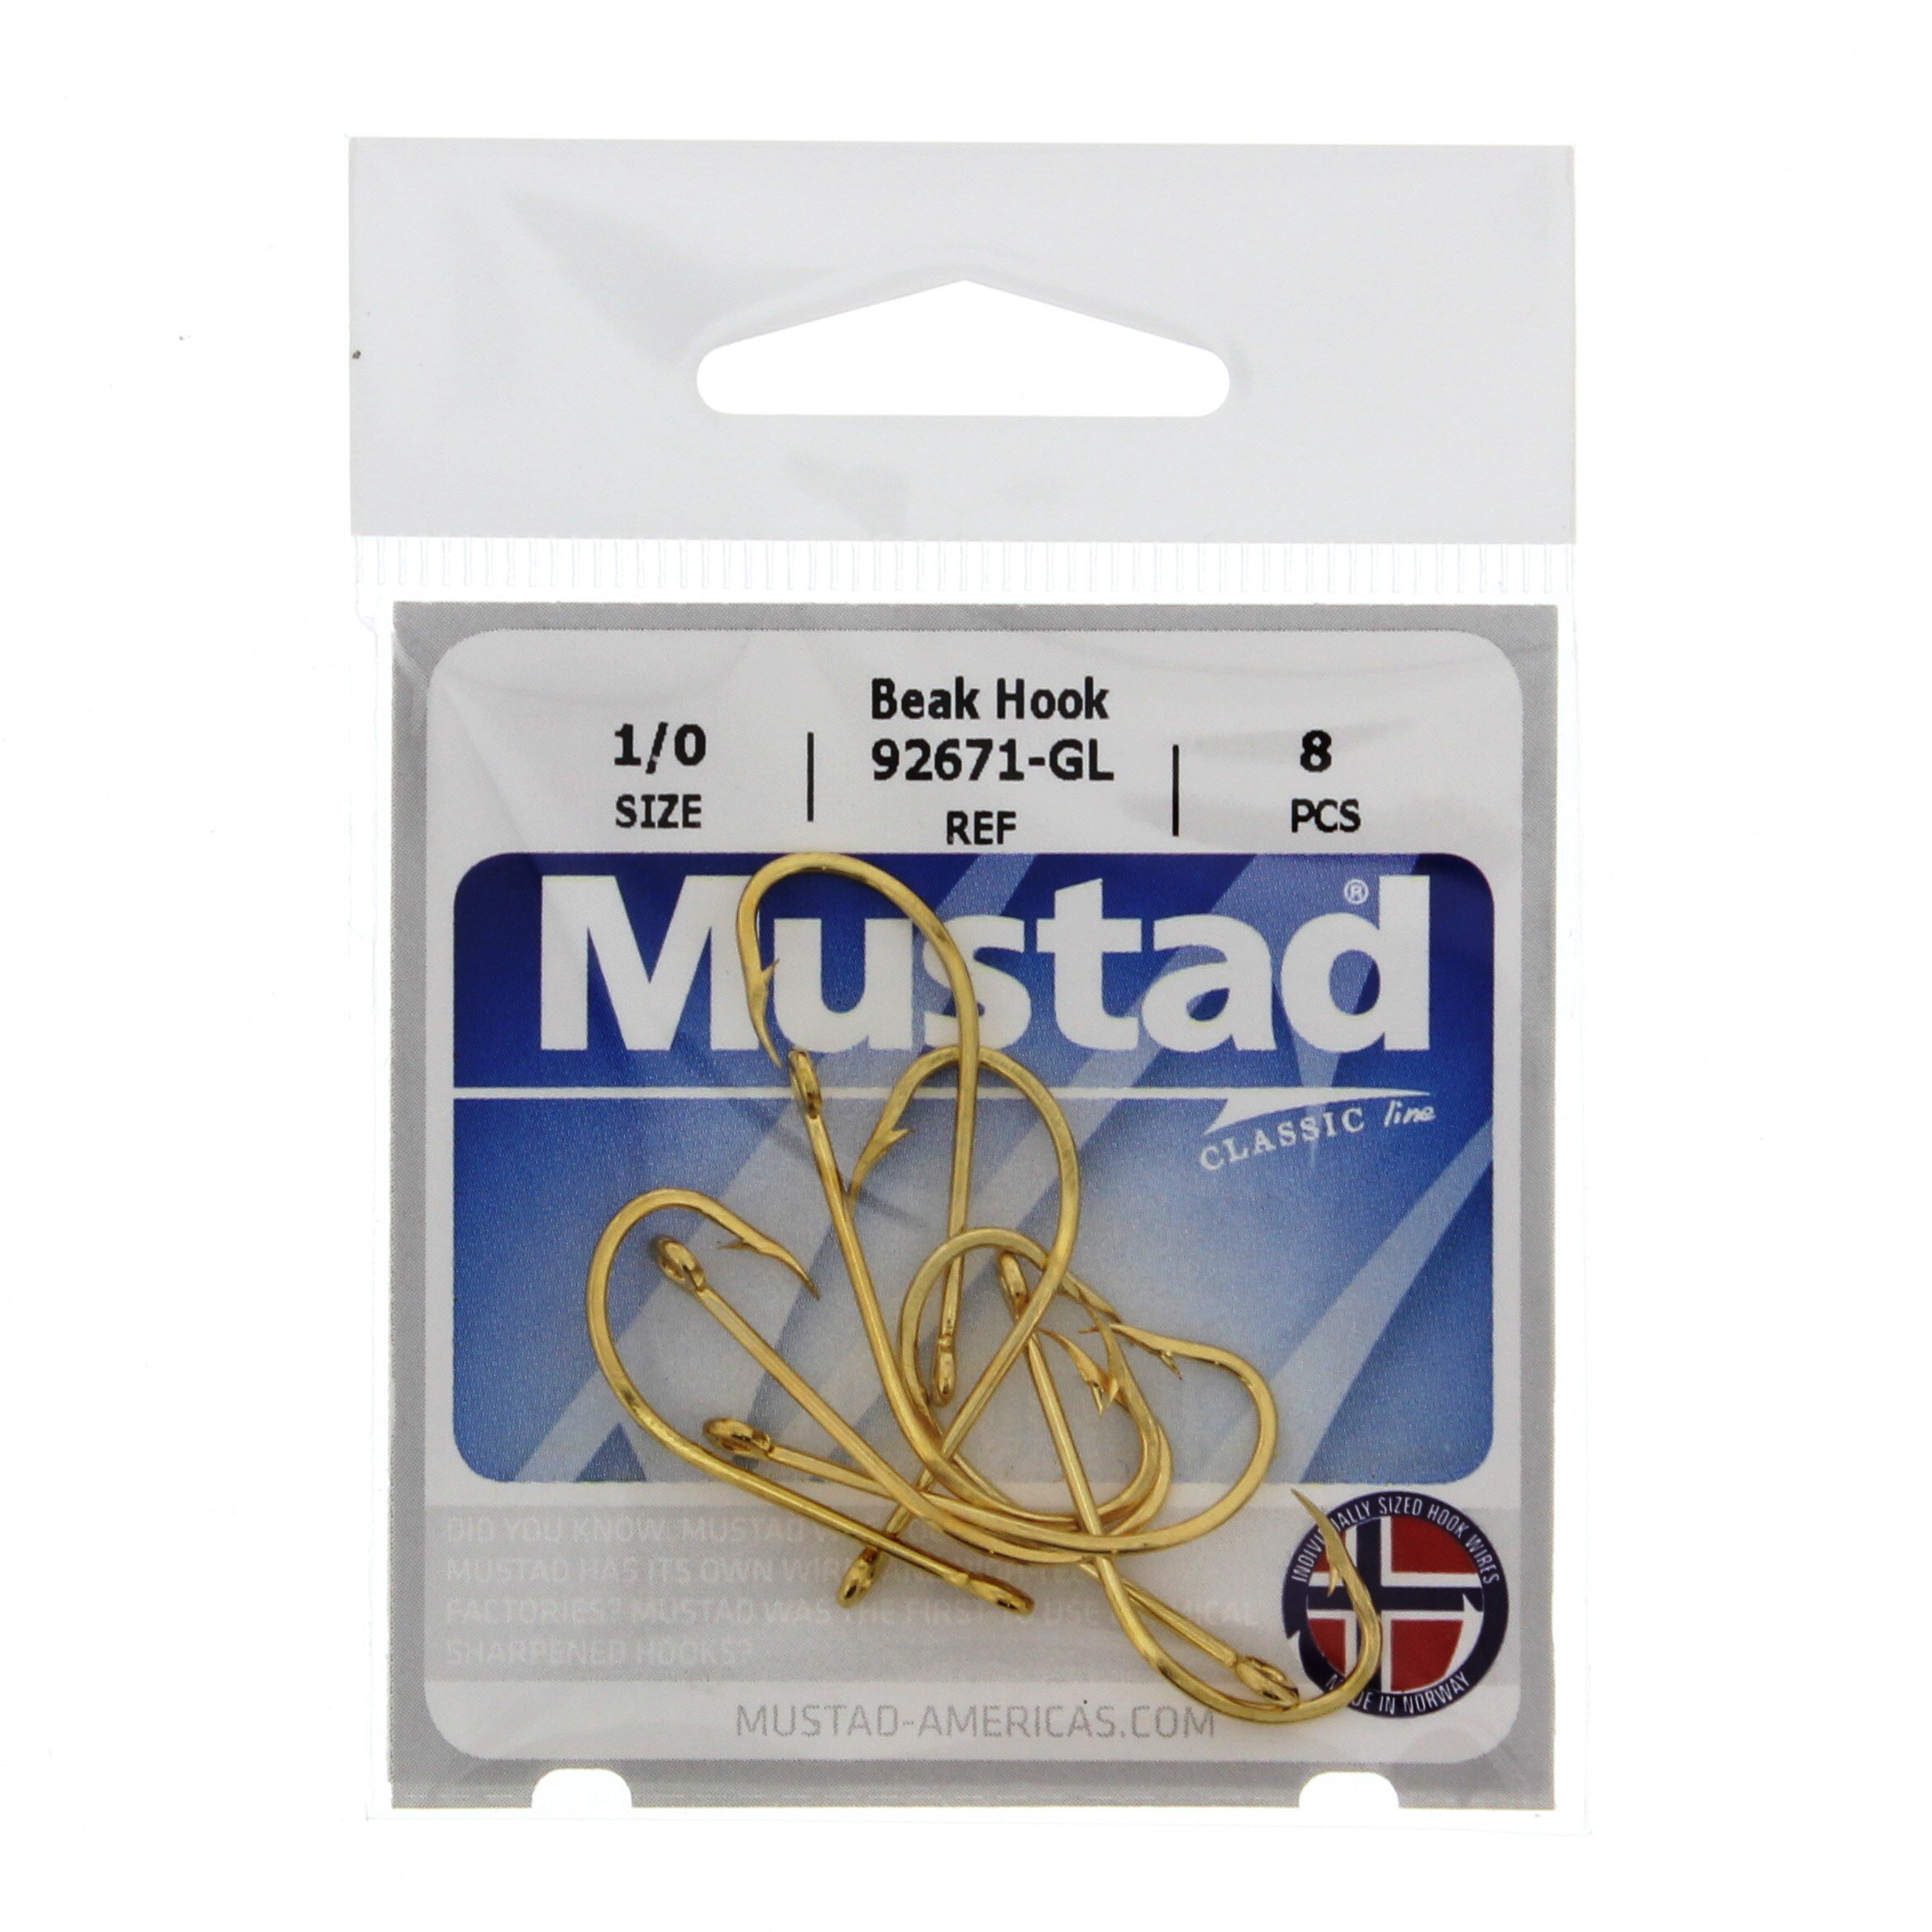 Mustad 92671-GL Gold Beak Hook, Size 1/0